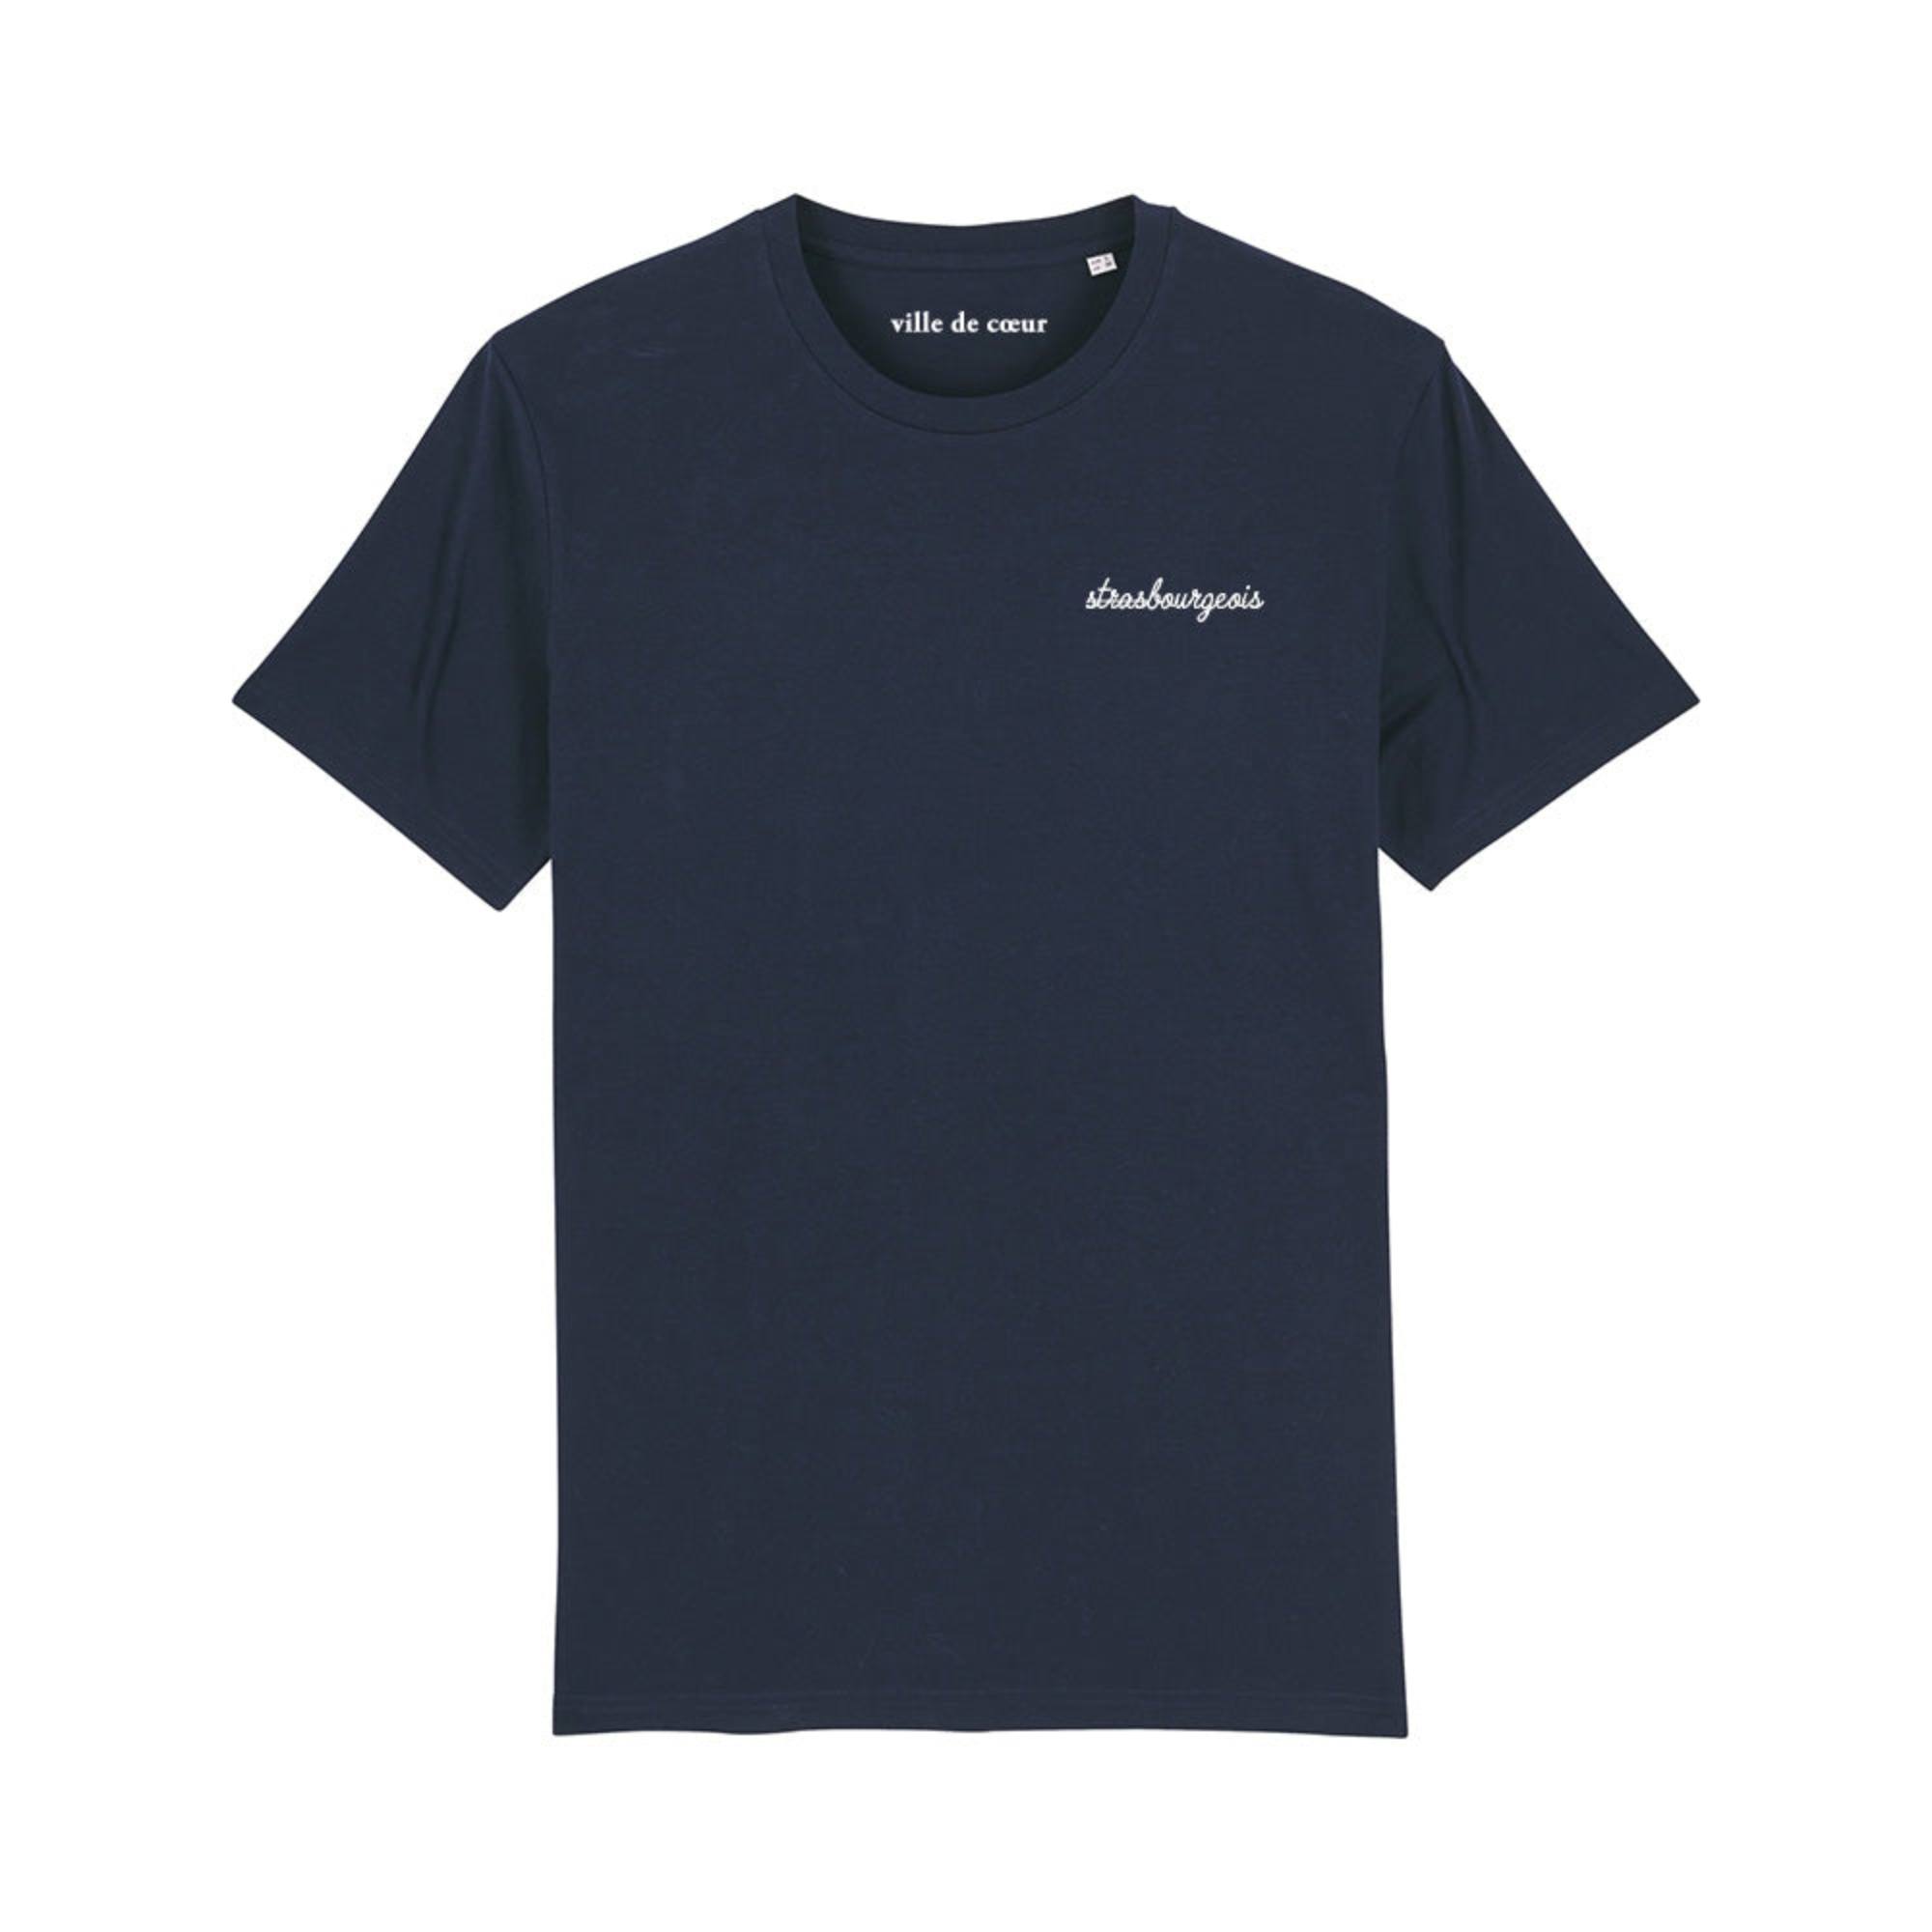 T-shirt strasbourgeois - Produits Curieux